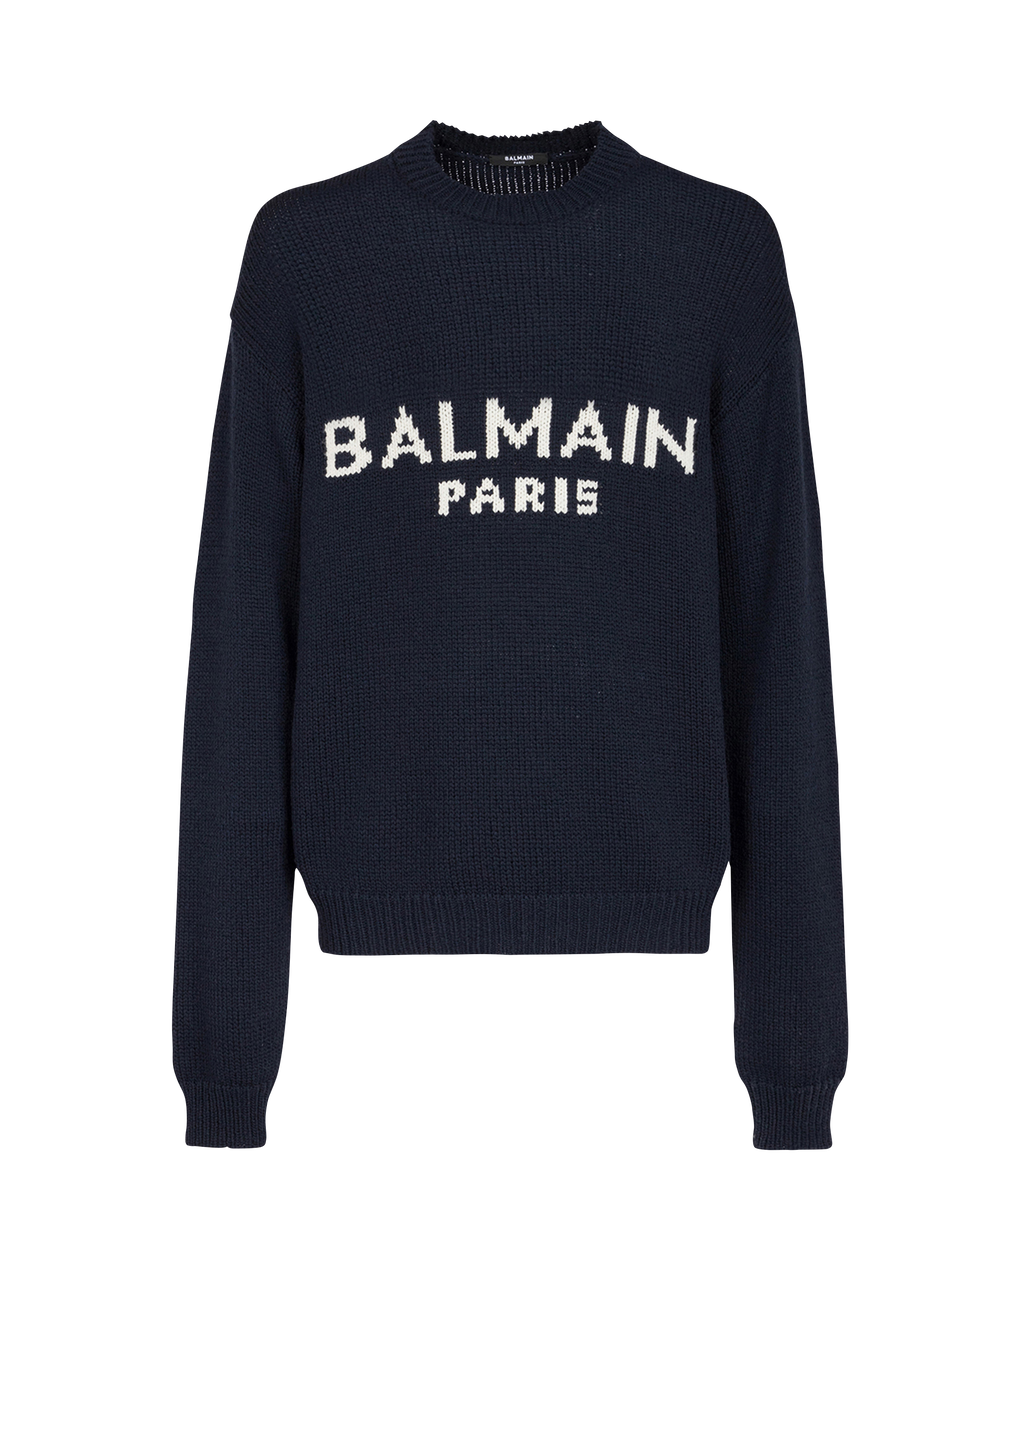 Wollpullover mit Logo von Balmain Paris, schwarz, hi-res